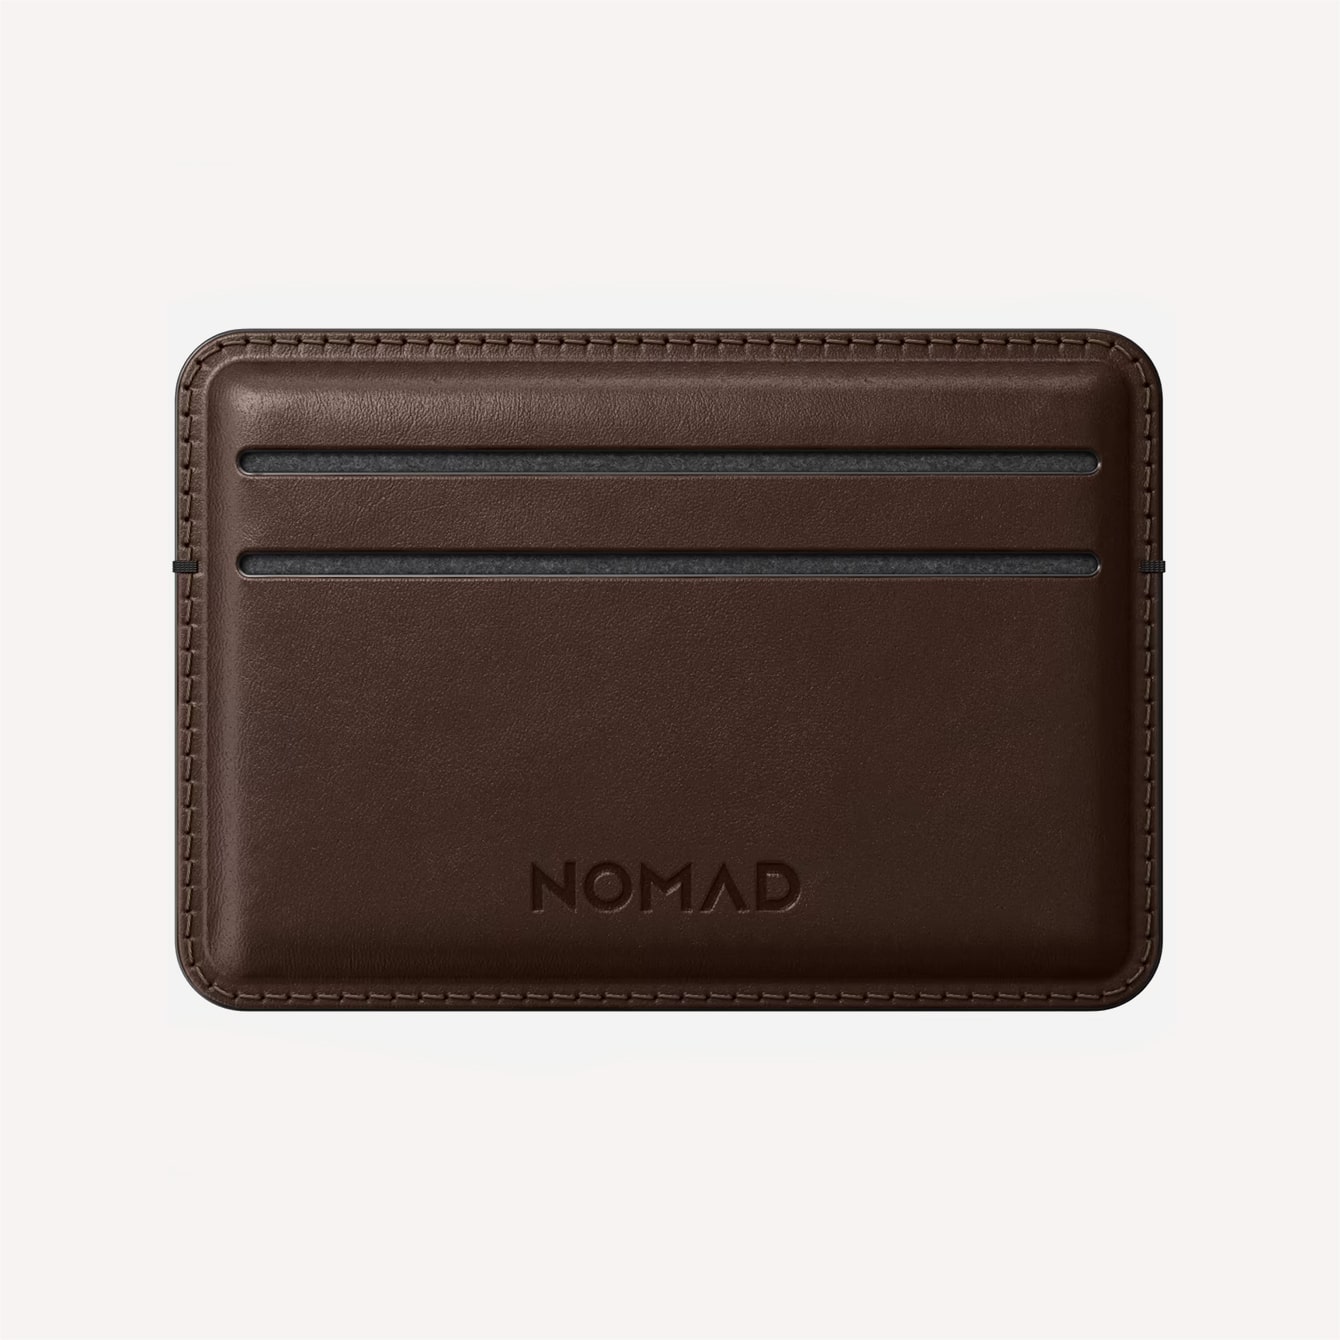 Nomadgoods Card Wallet